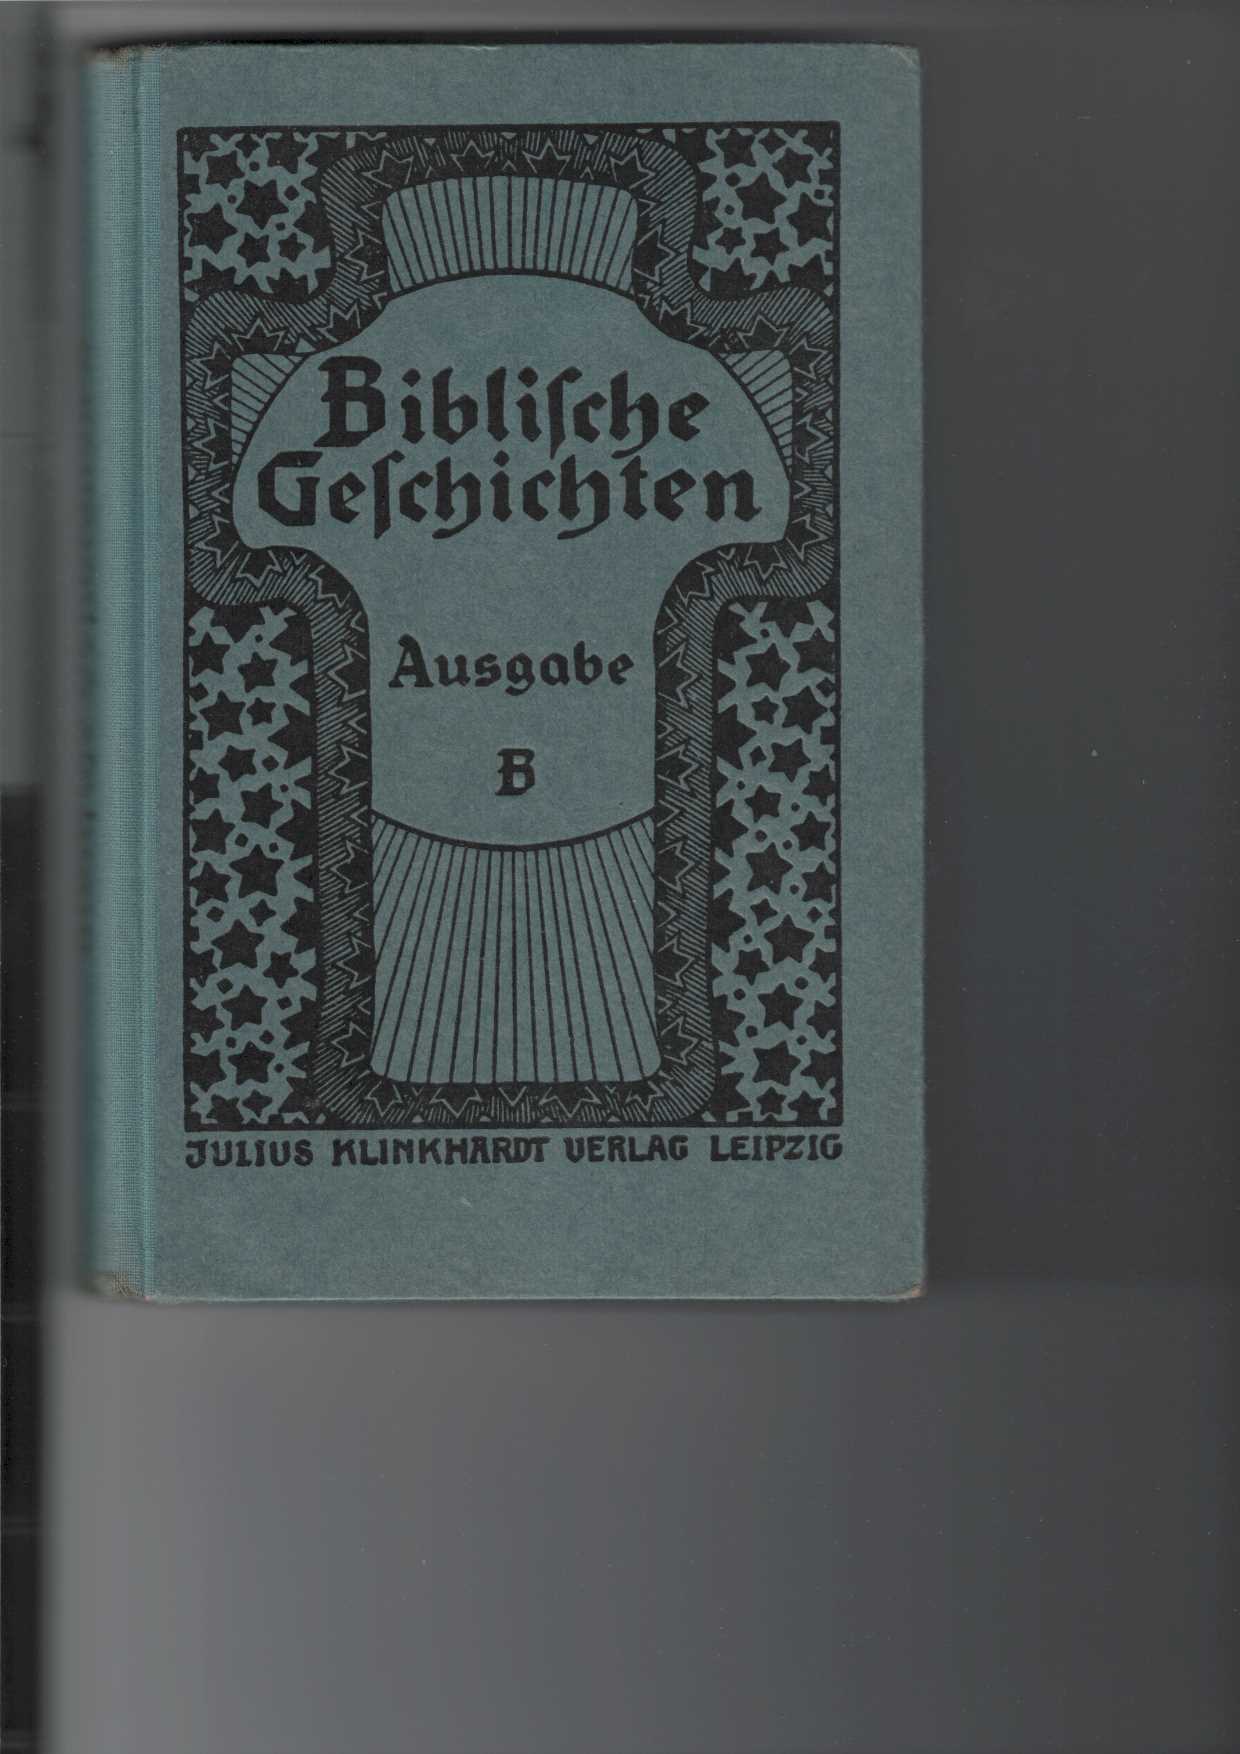   Biblische Geschichten von Berthelt, Jkel, Petermann, Thomas : Ausgabe B: 